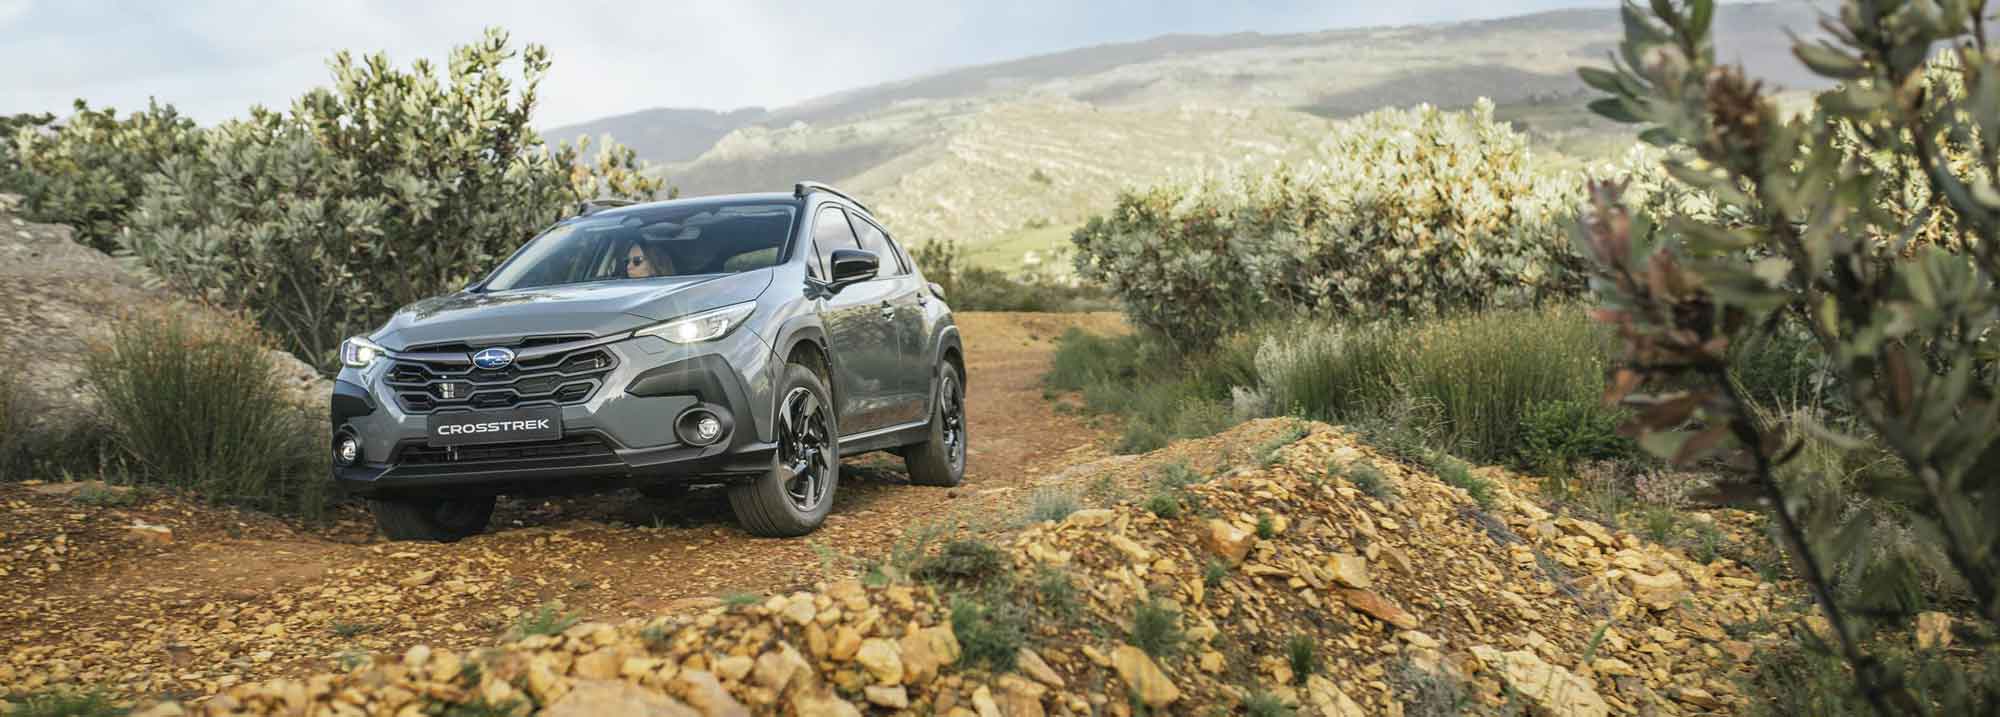 Subaru Crosstrek goes on sale in SA